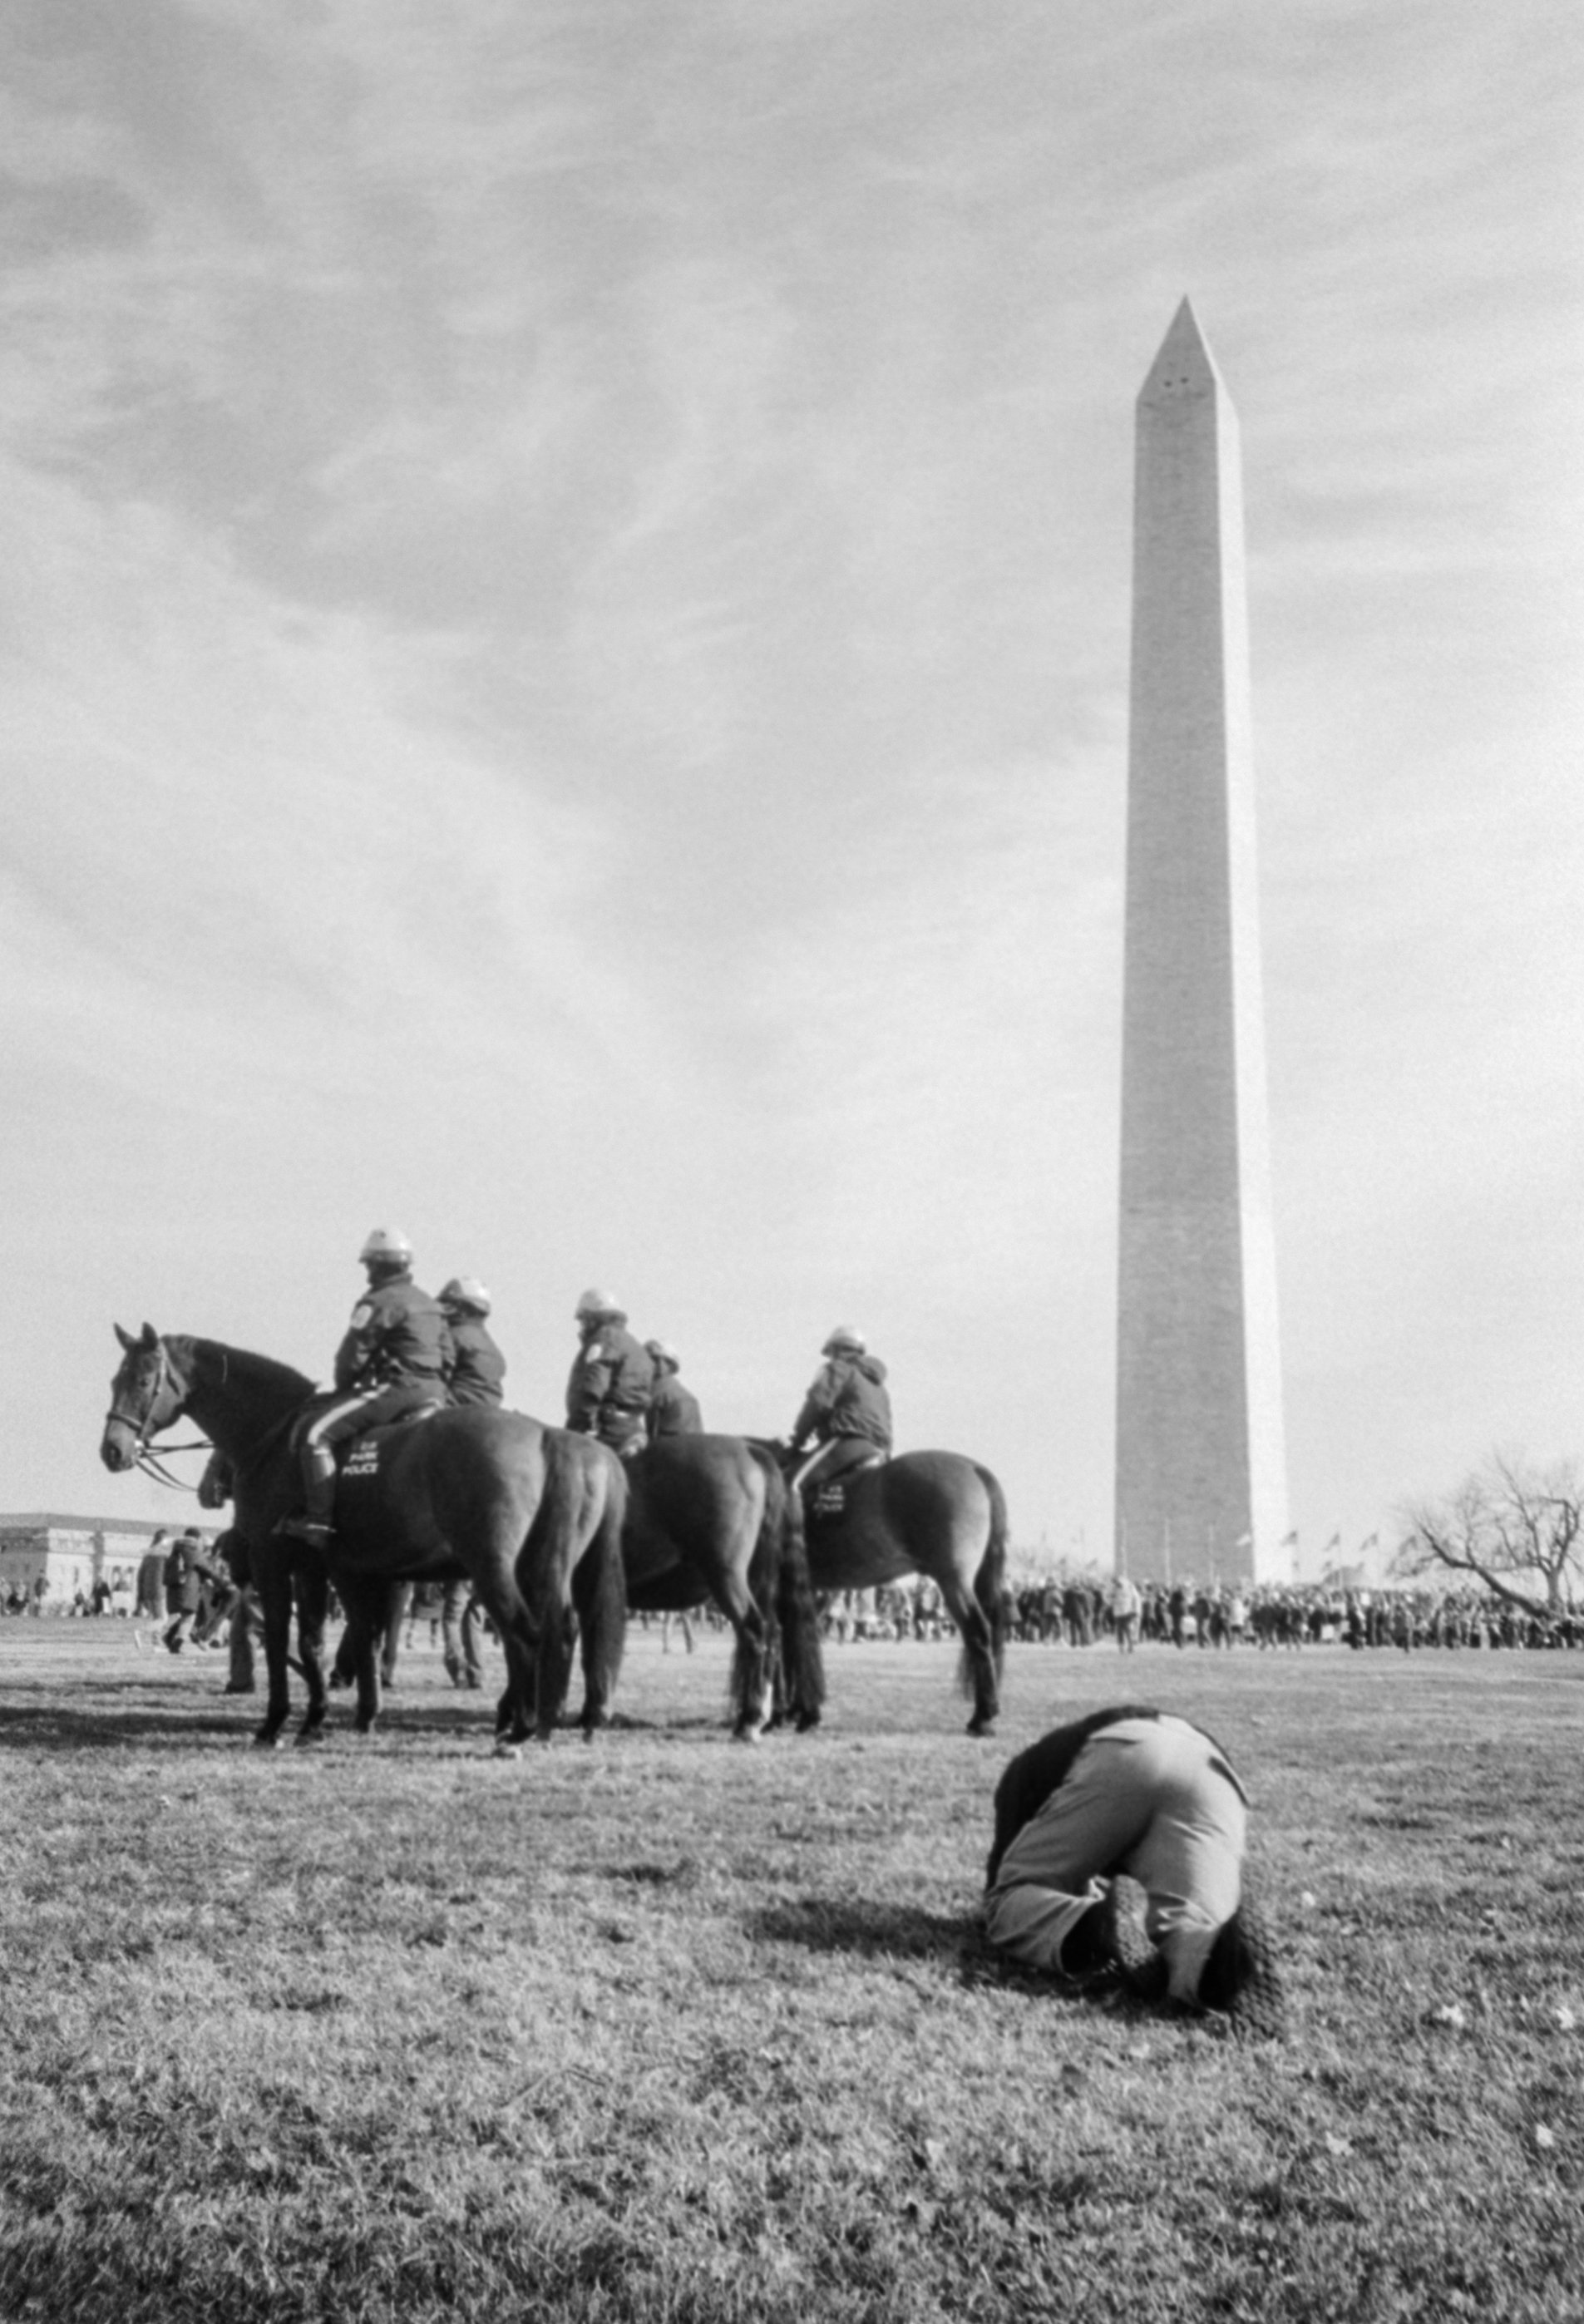 Washington D.C. 2021, Kodak 400TX